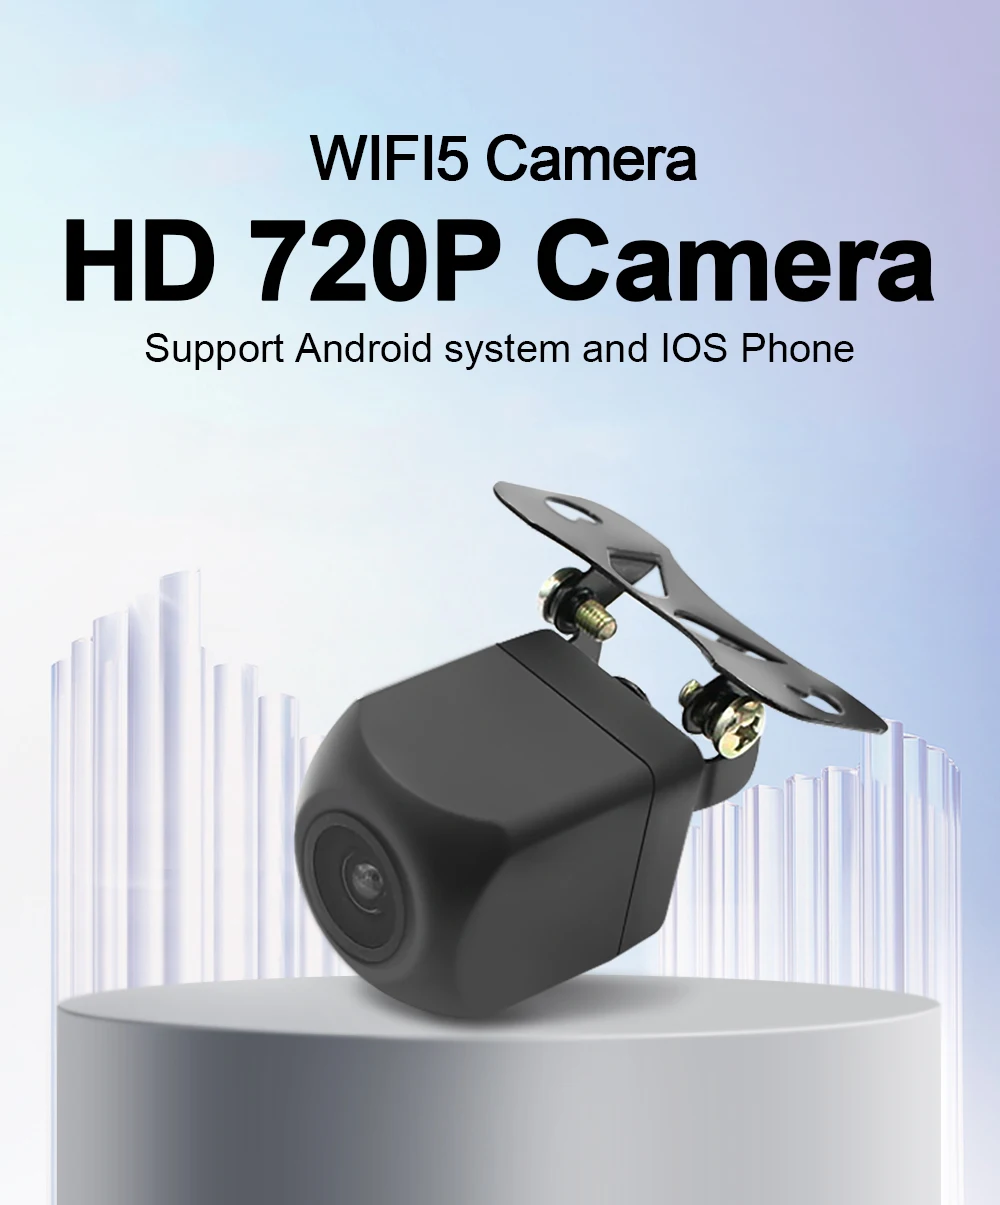 Tanio Carsanbo Car Wifi5 HD noktowizor kamera tylna bezprzewodowa wodoodporna kamera cofania sklep